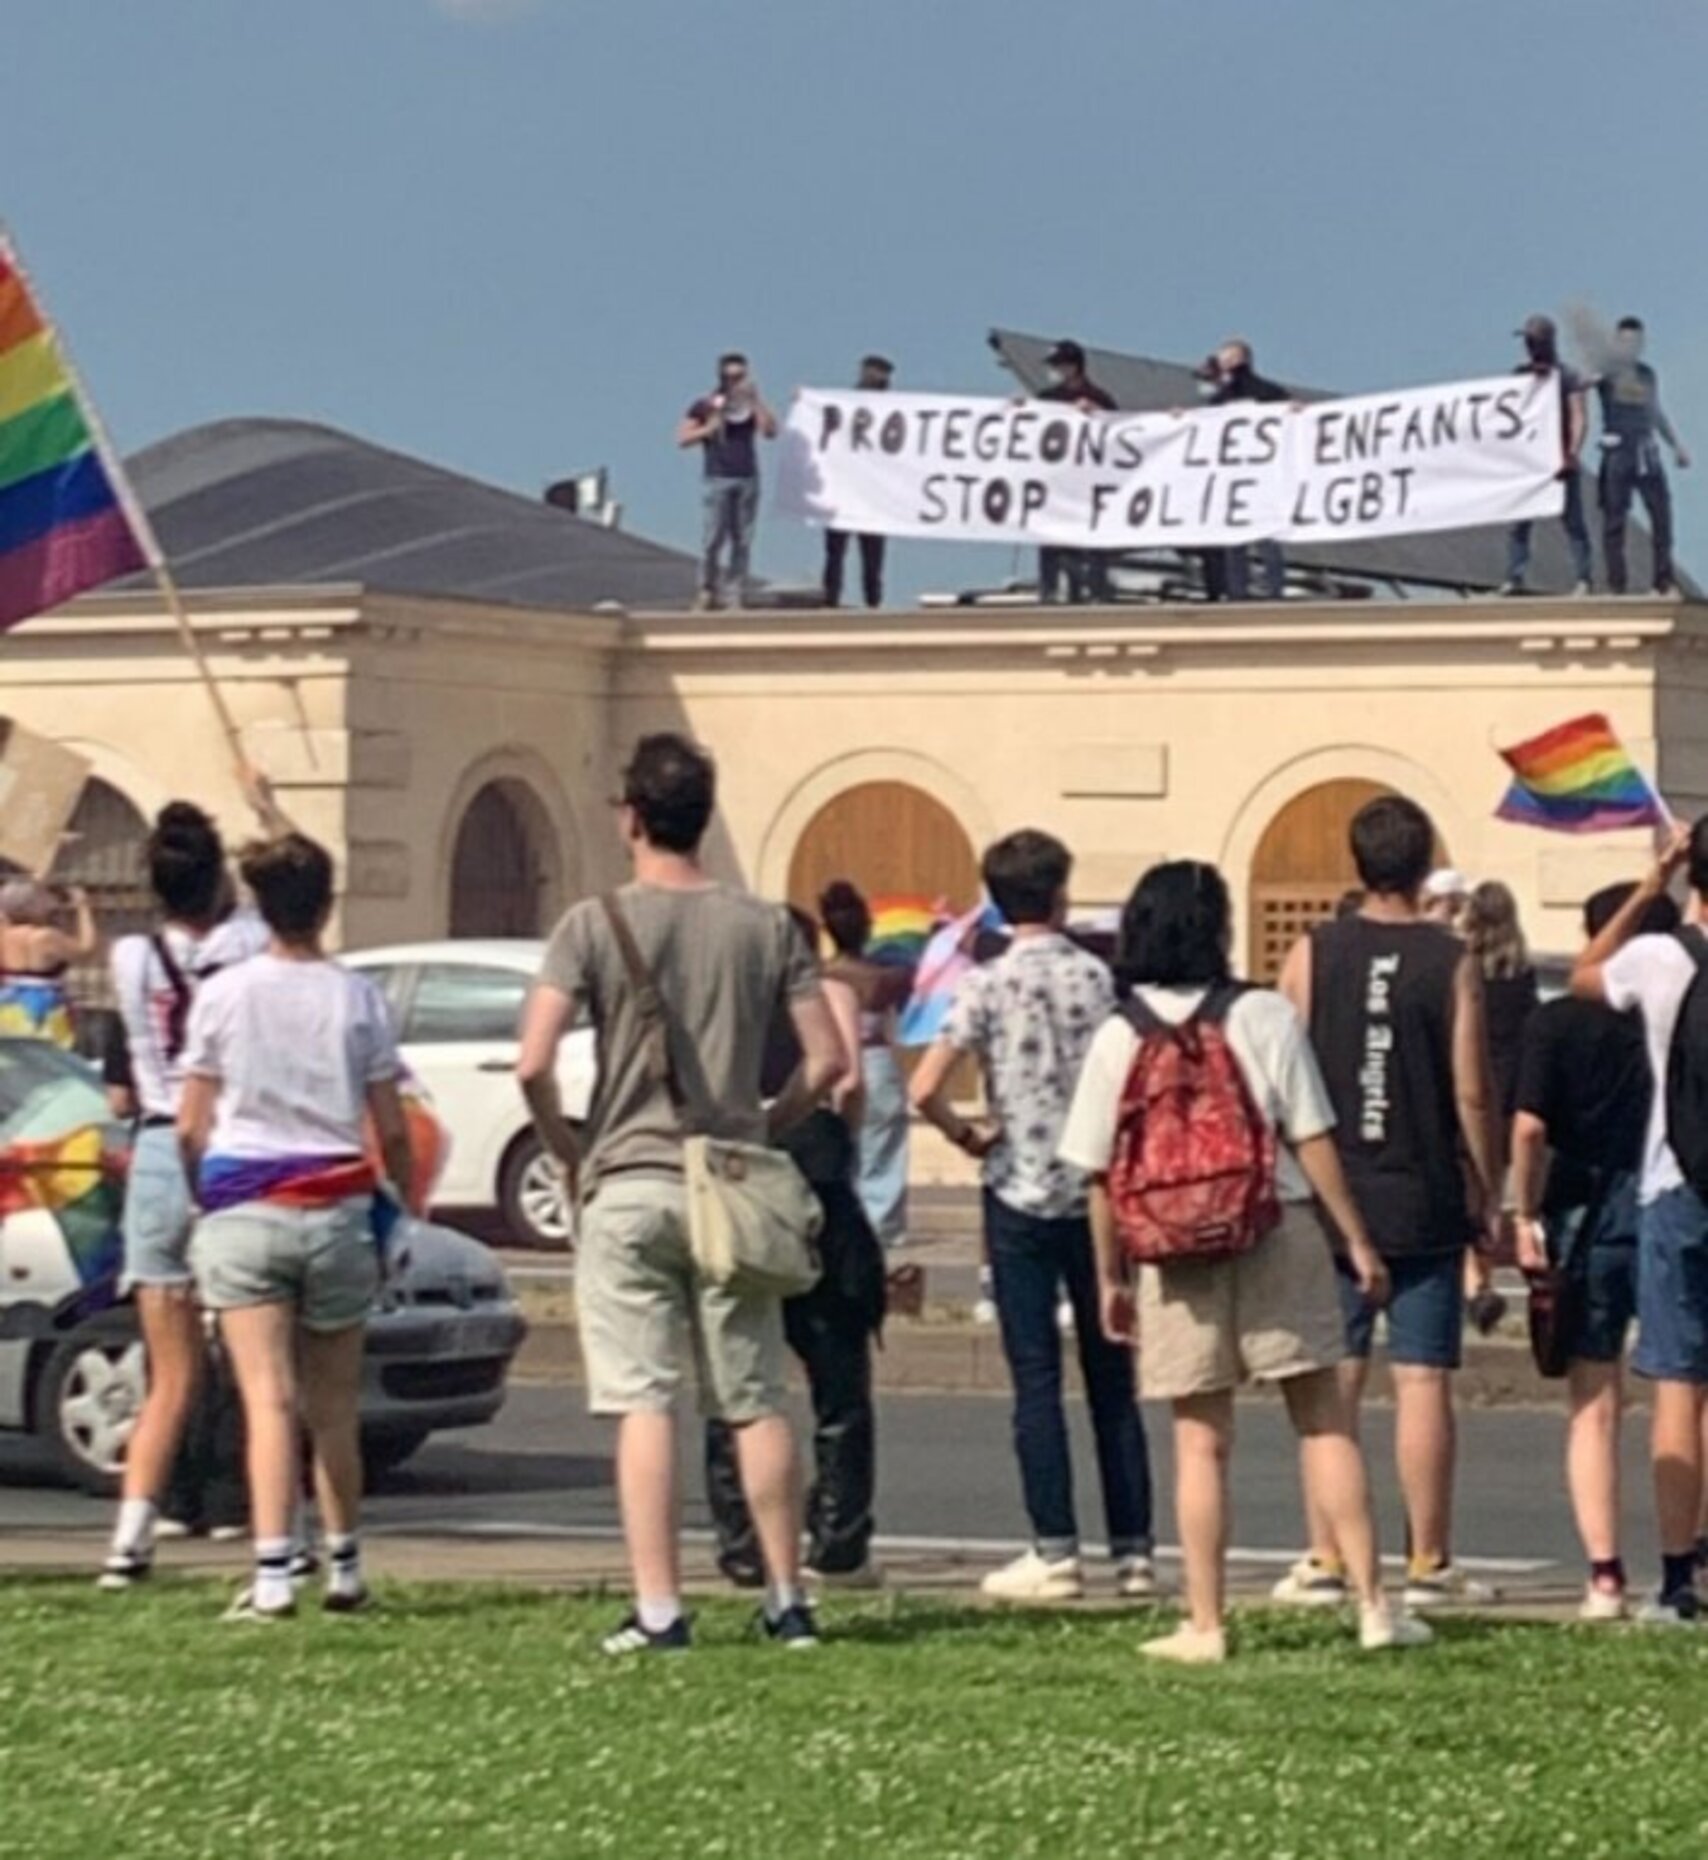 Más boicots de la extrema derecha a las manifestaciones del Orgullo LGTBI, ahora en Burdeos